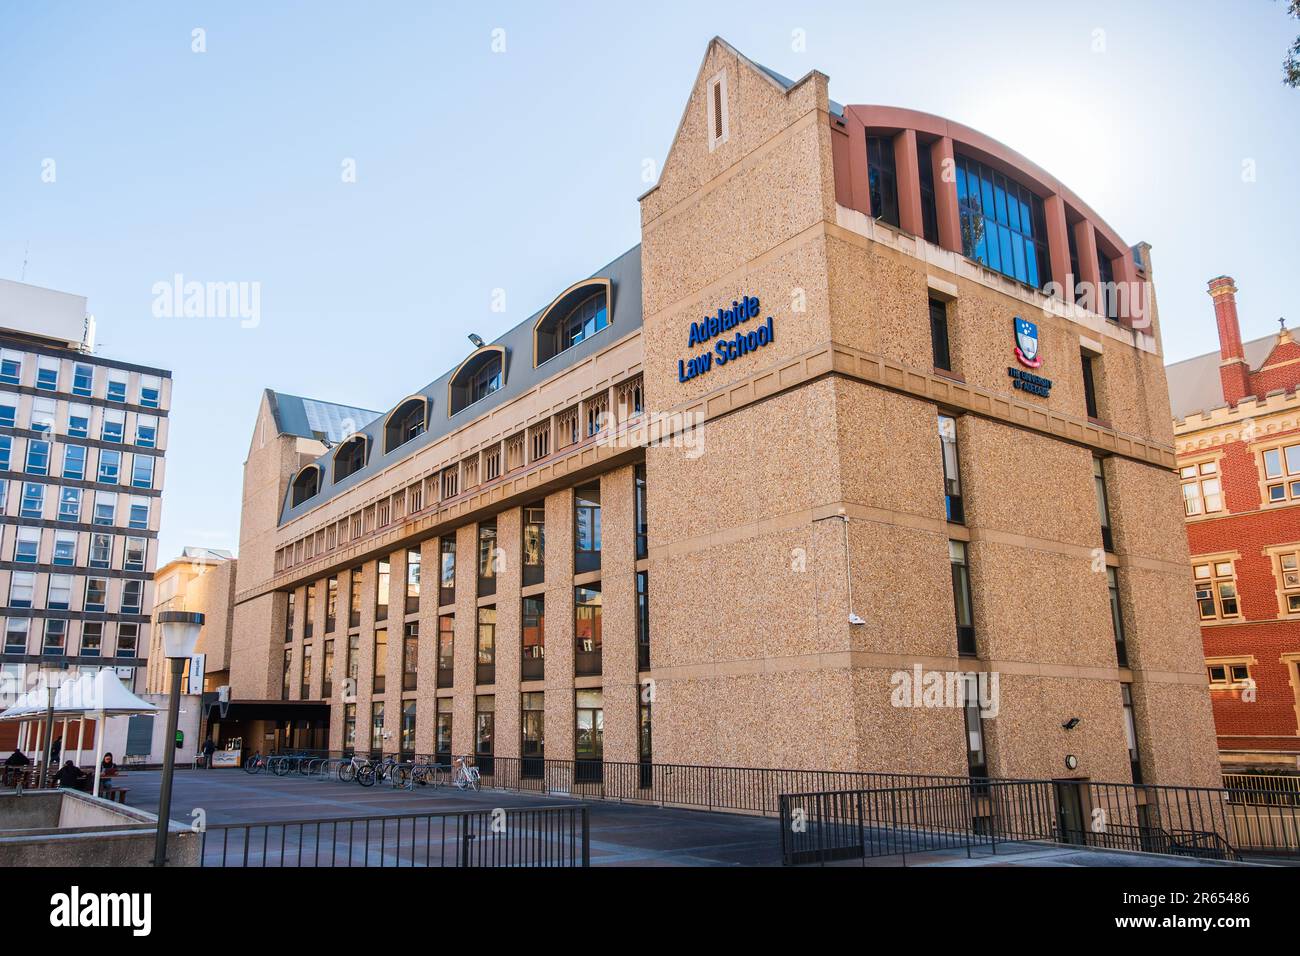 Adelaide, South Australia - 2 settembre 2019: Facciata della Adelaide Law School Building, Università di Adelaide nel centro della città vista in una giornata intensa Foto Stock